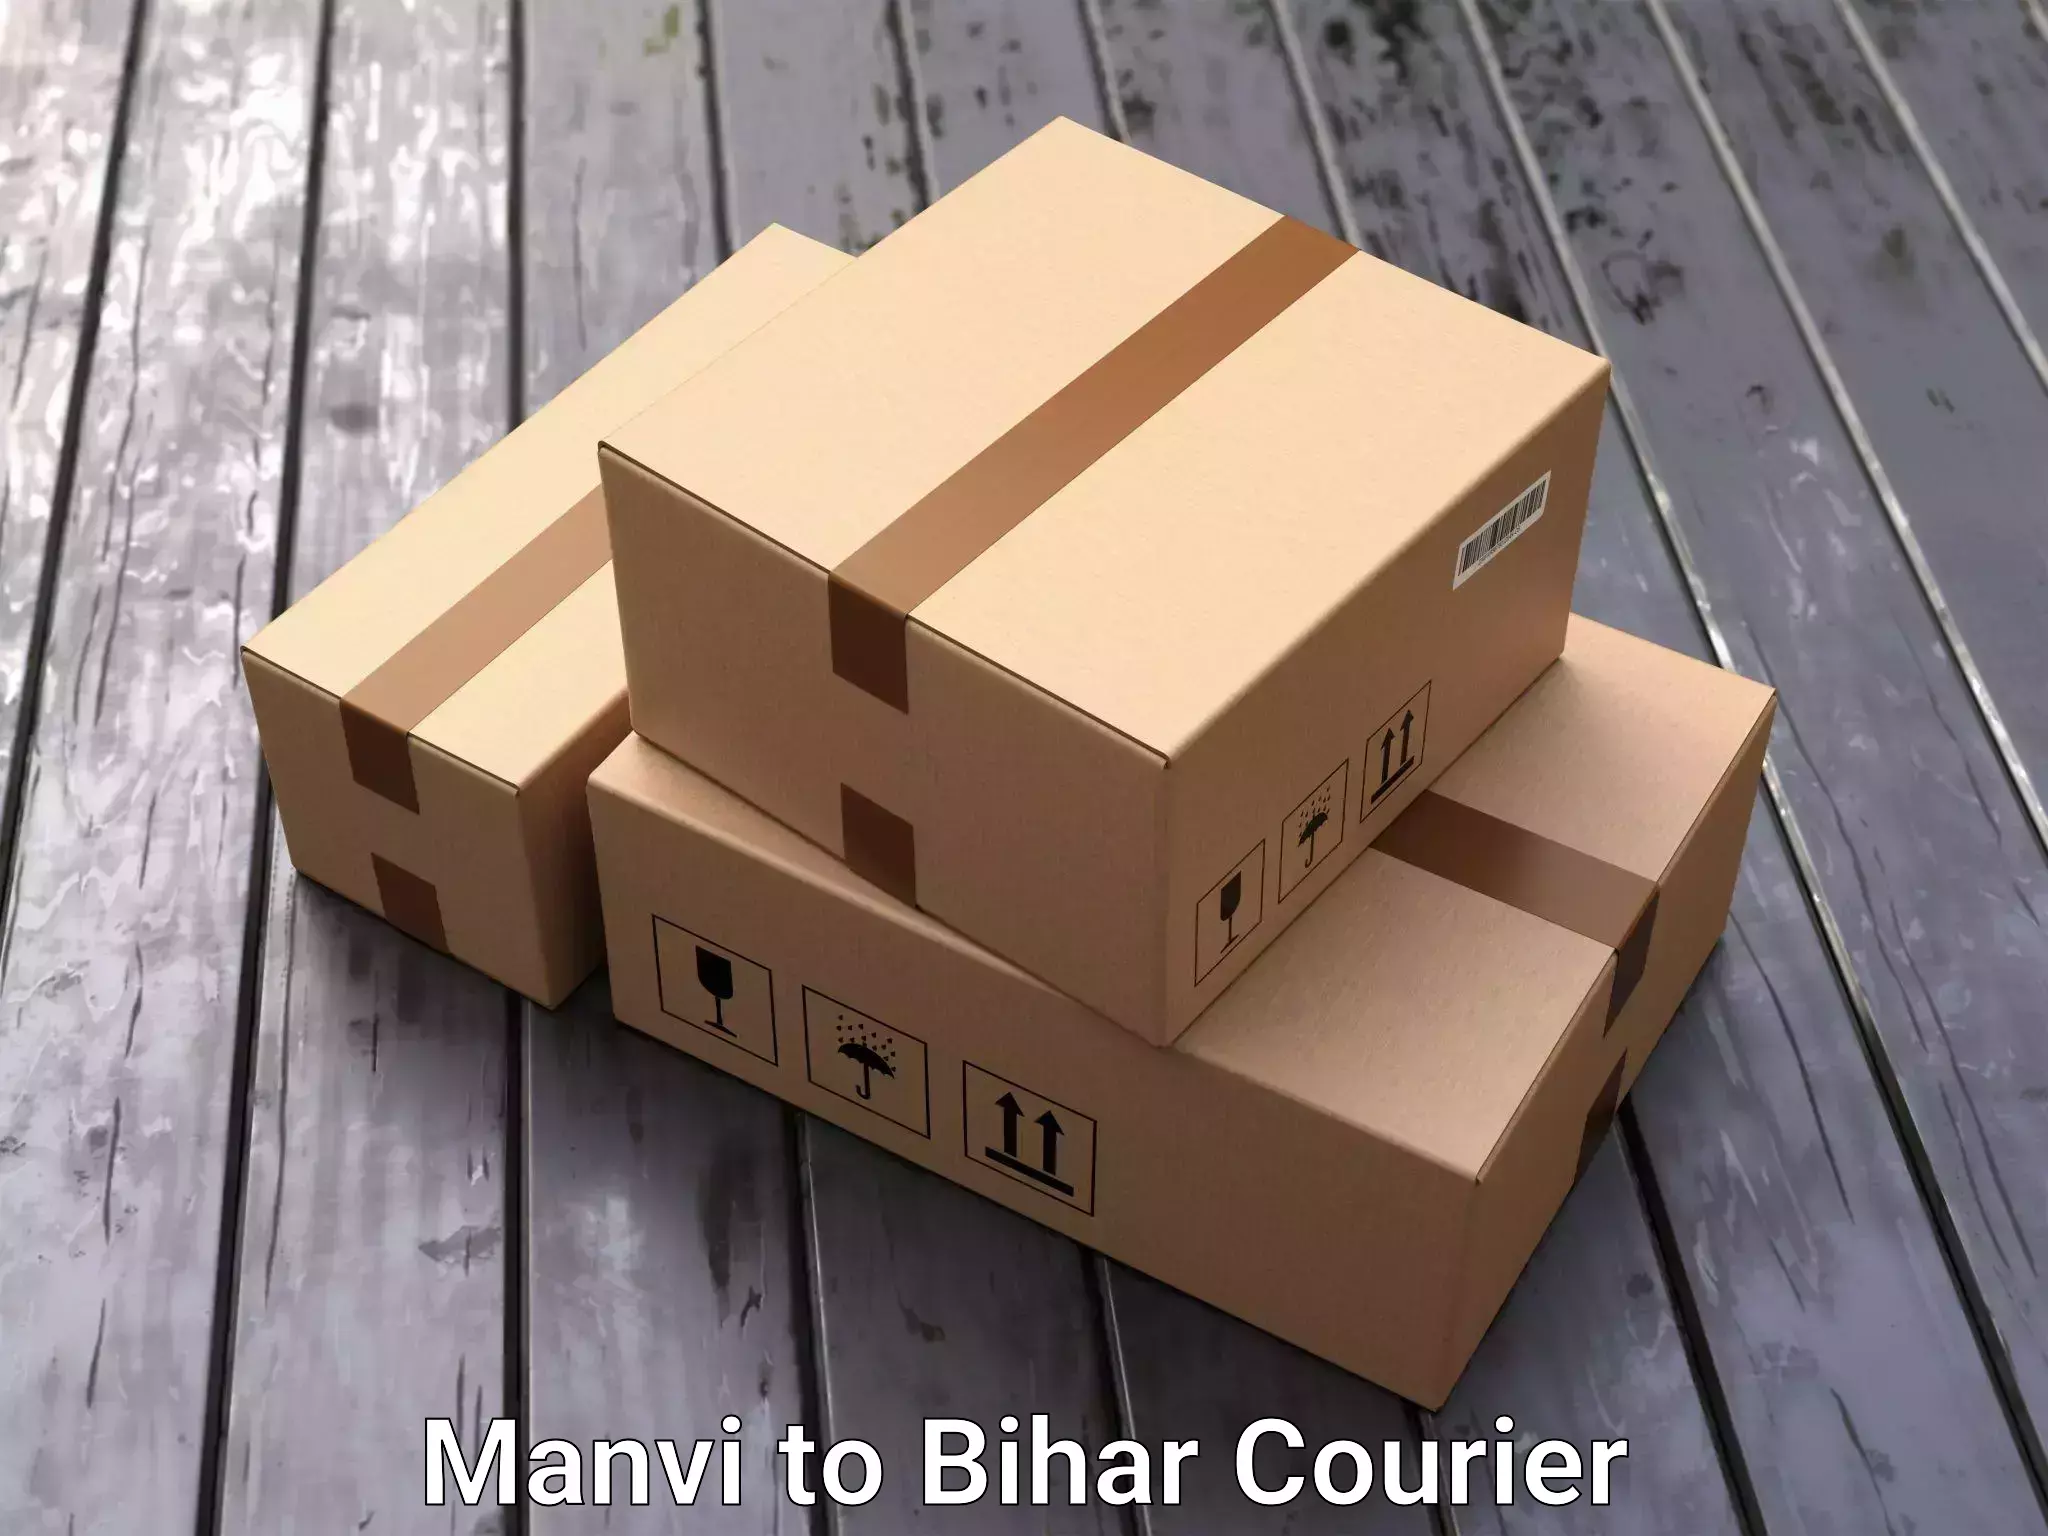 Furniture transport professionals Manvi to Bihar